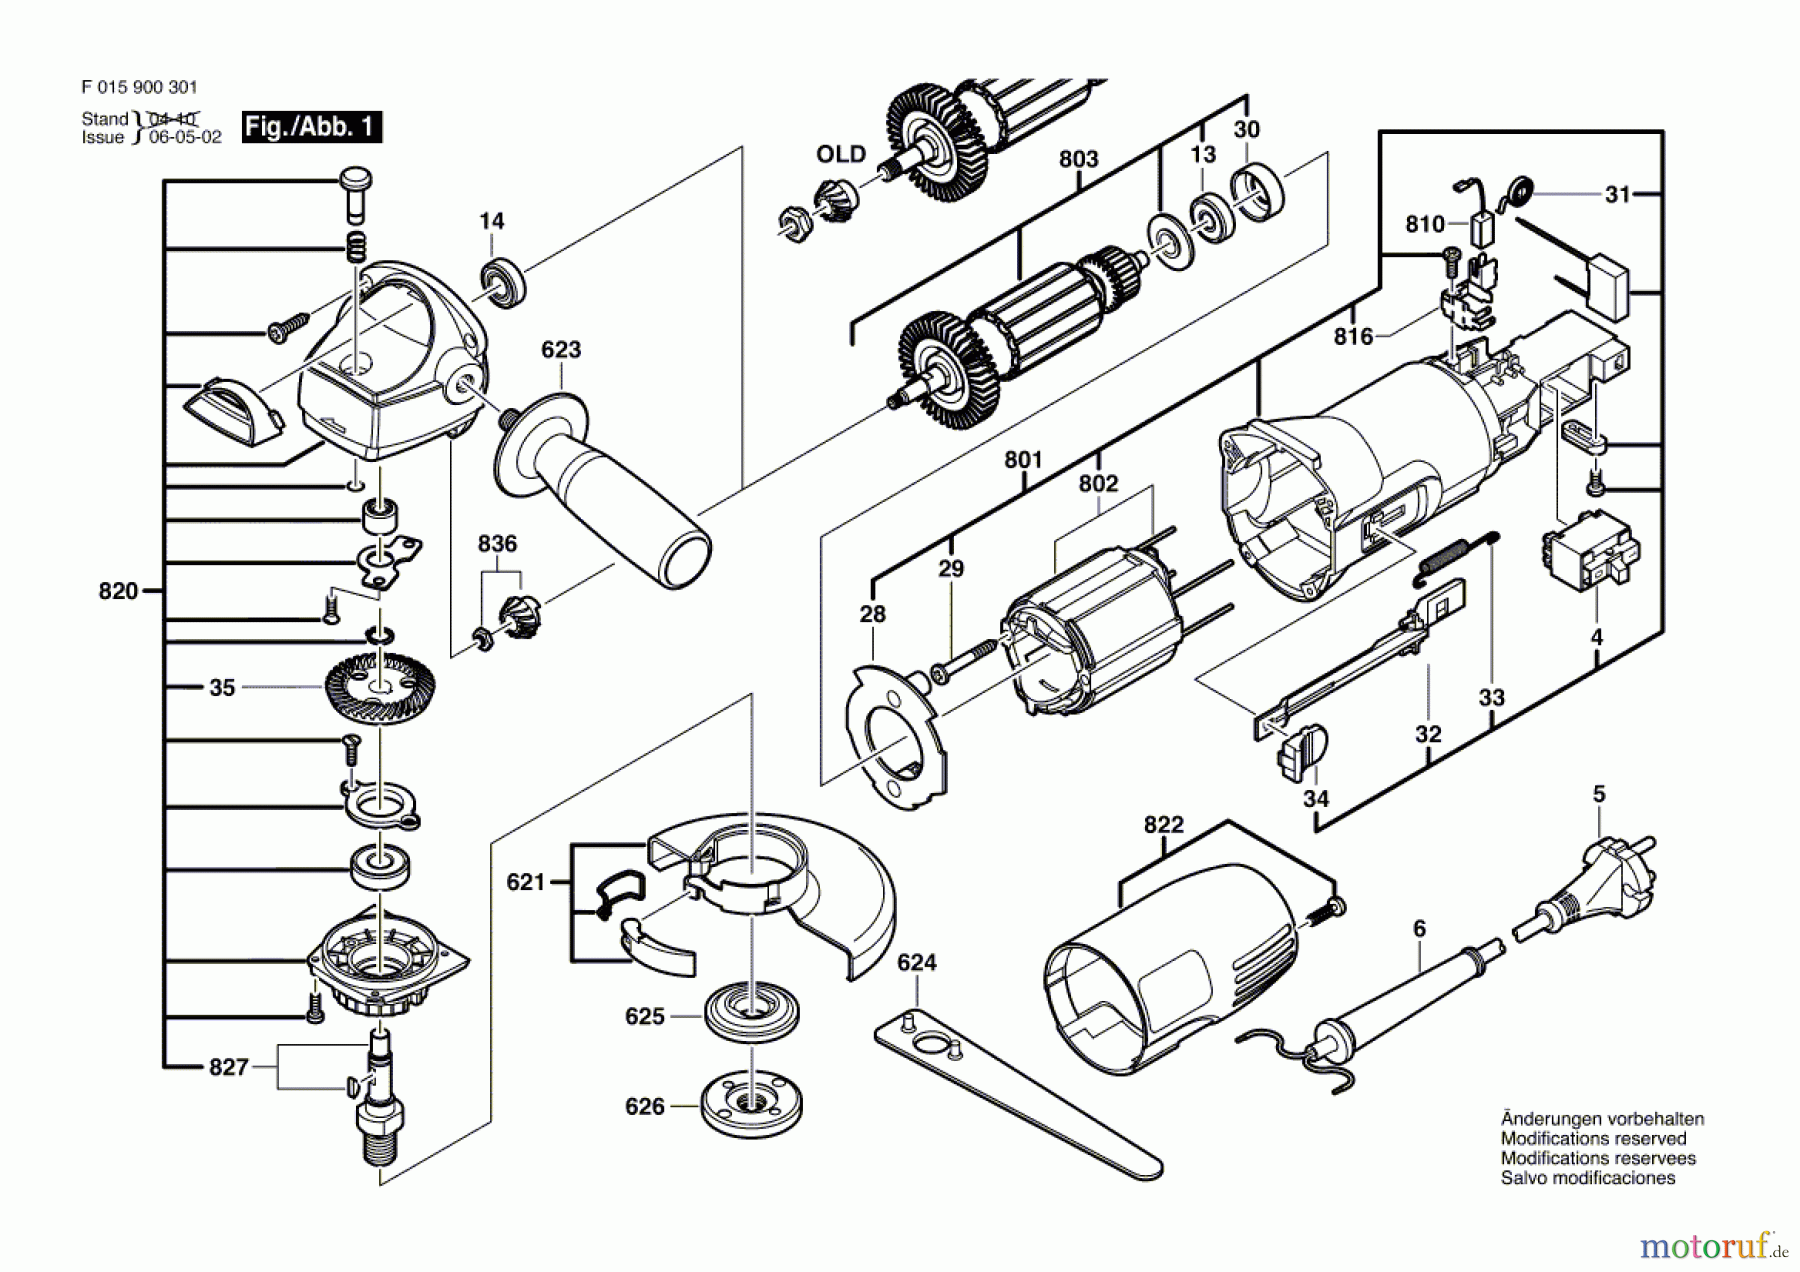  Bosch Werkzeug Winkelschleifer 9003 Seite 1